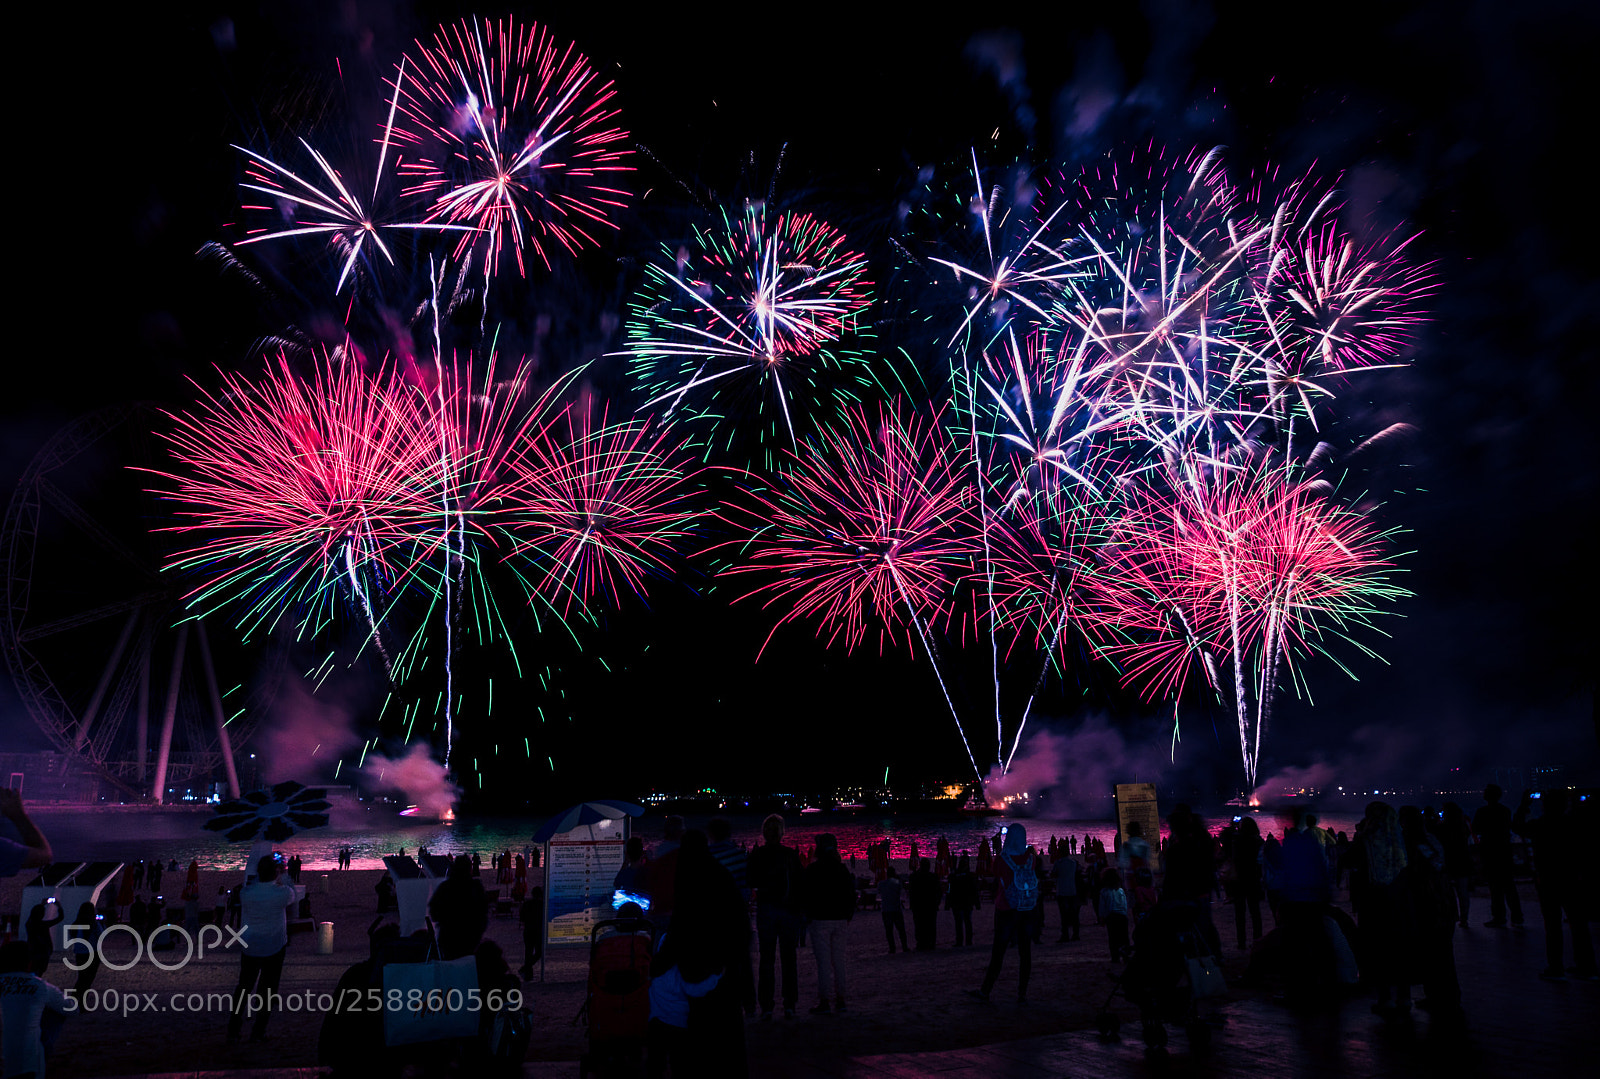 Sony a6300 sample photo. Dubai fireworks photography